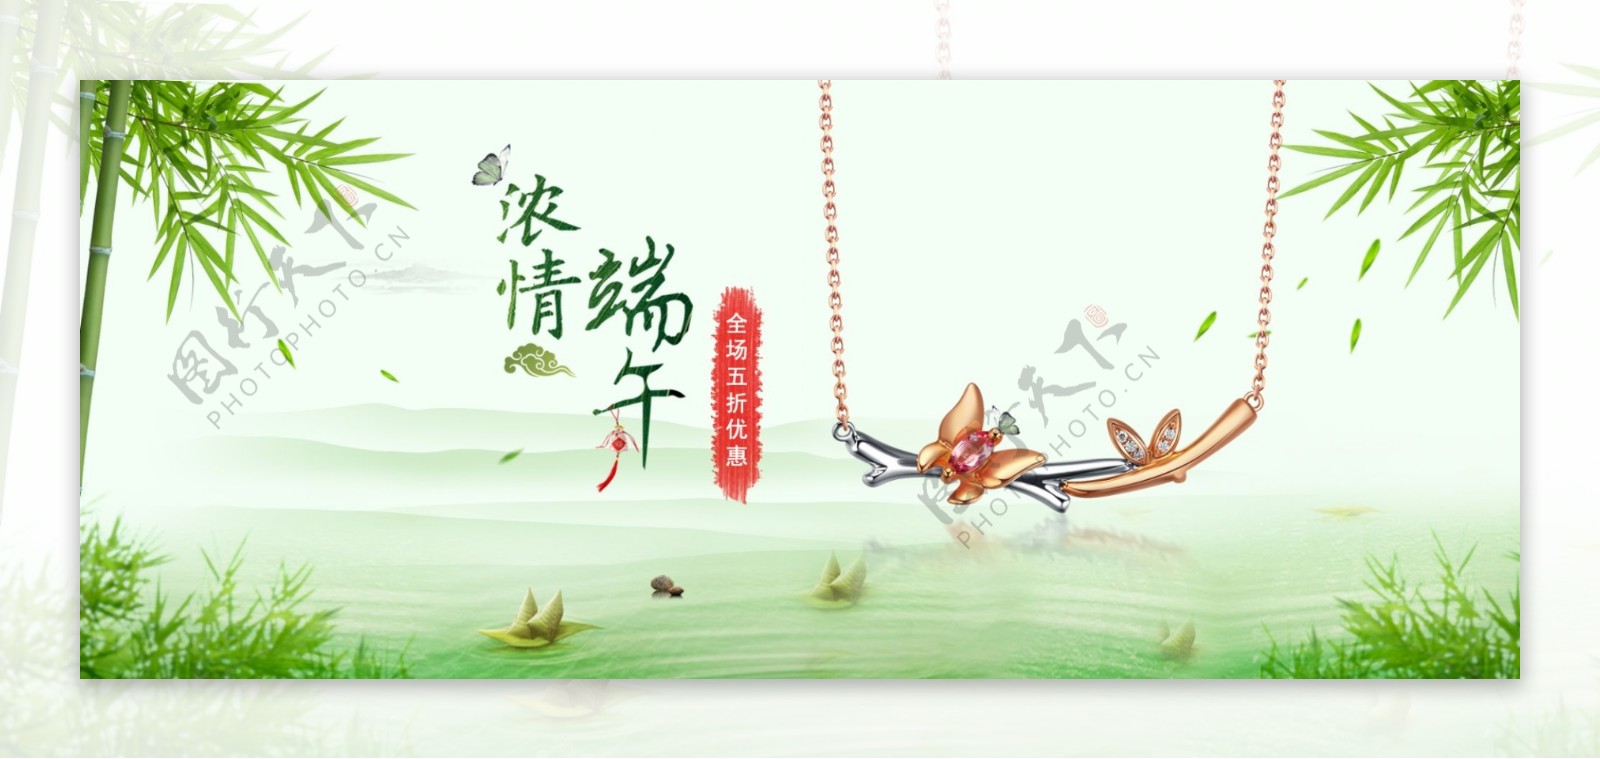 端午节海报banner